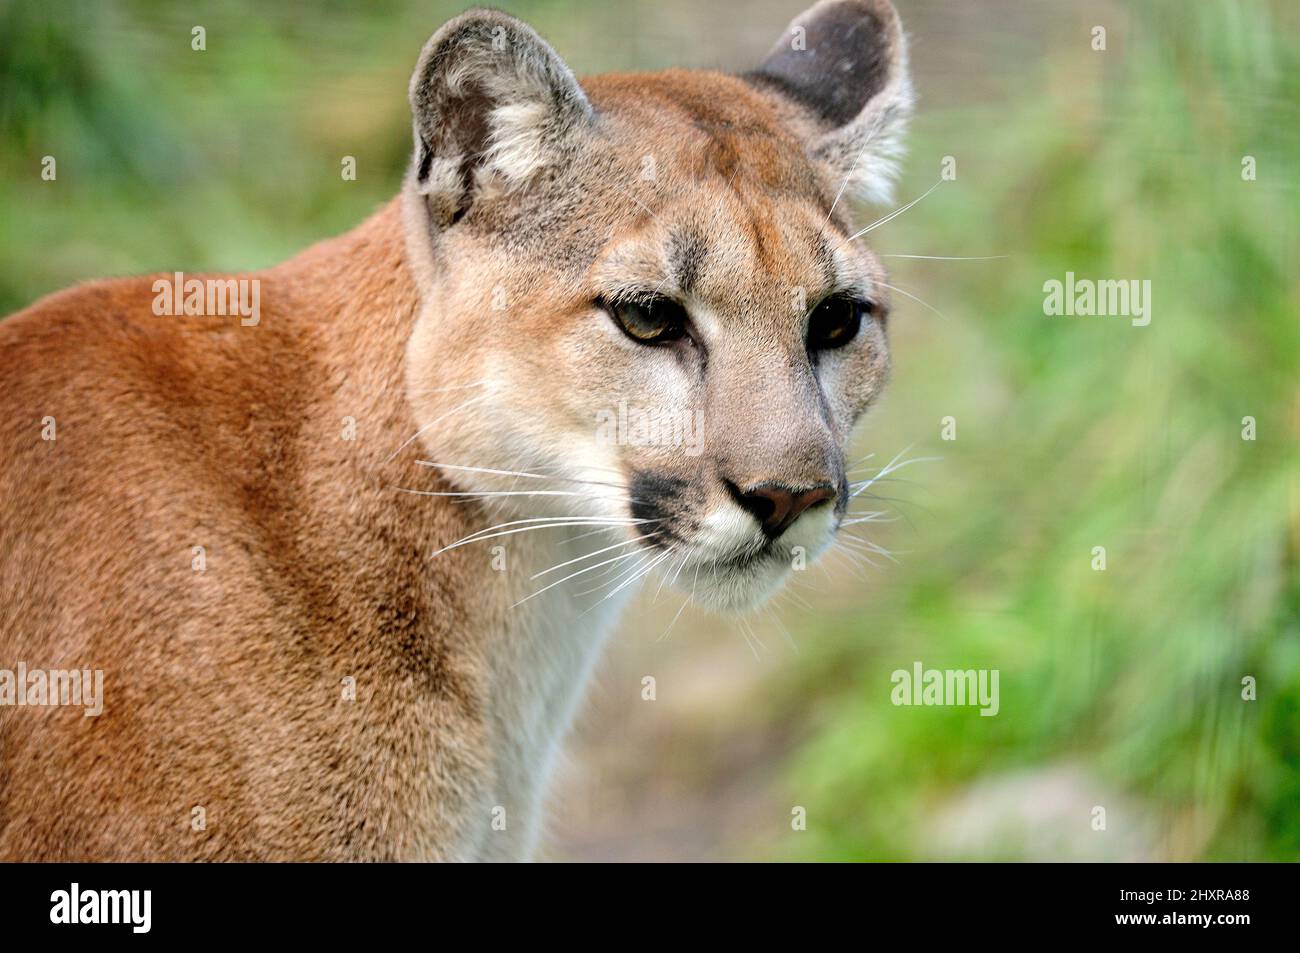 Puma, Puma concolor, Felidae, Portrait, Raubtier, Sägetier, Tier, captive, Zoo, Calgary, Alberta, Kanada Banque D'Images